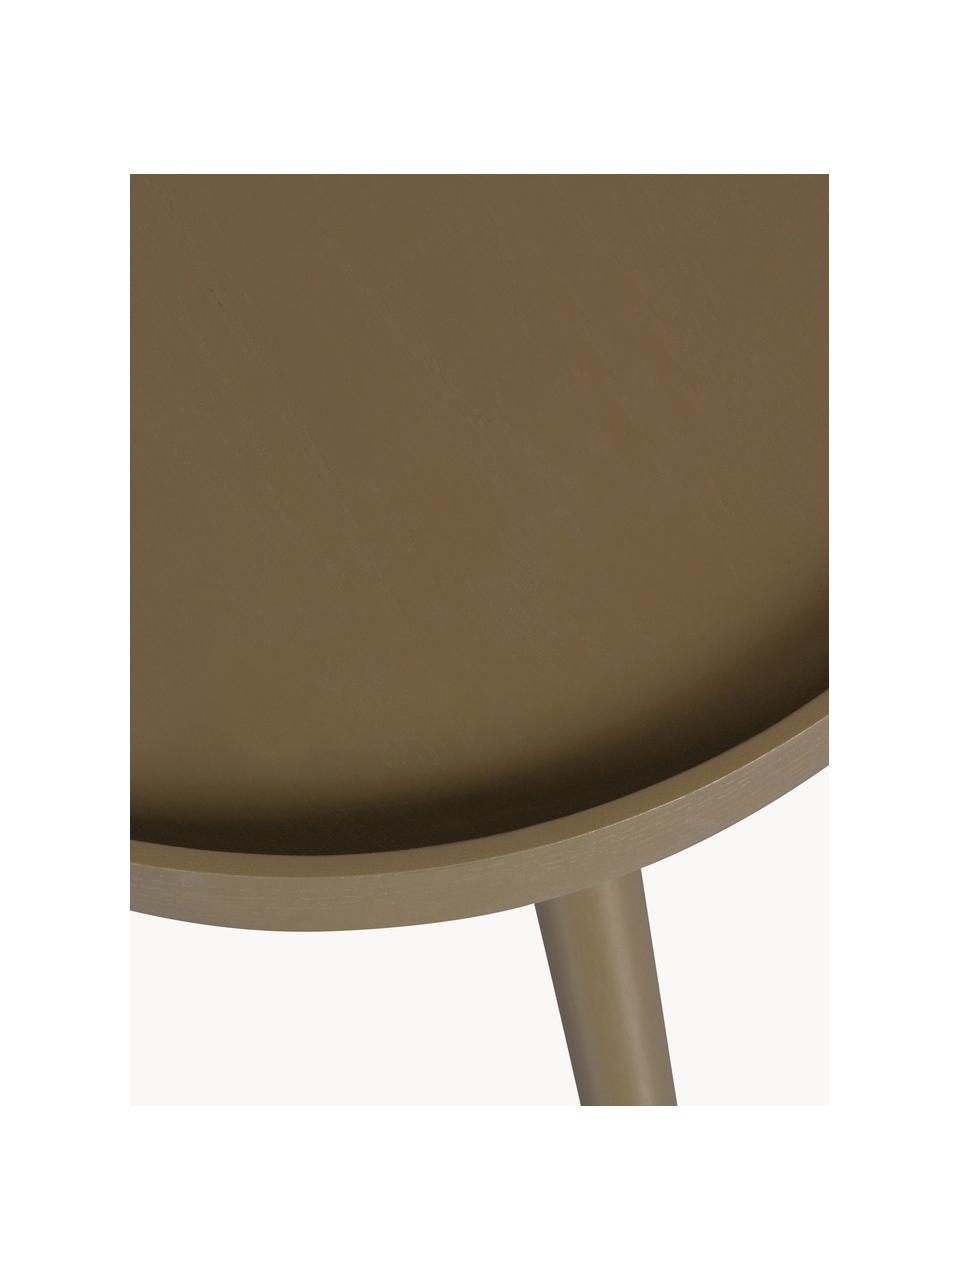 Drevený pomocný stolík v organickom tvare Mae, Drevo, Š 61 x V 40 cm